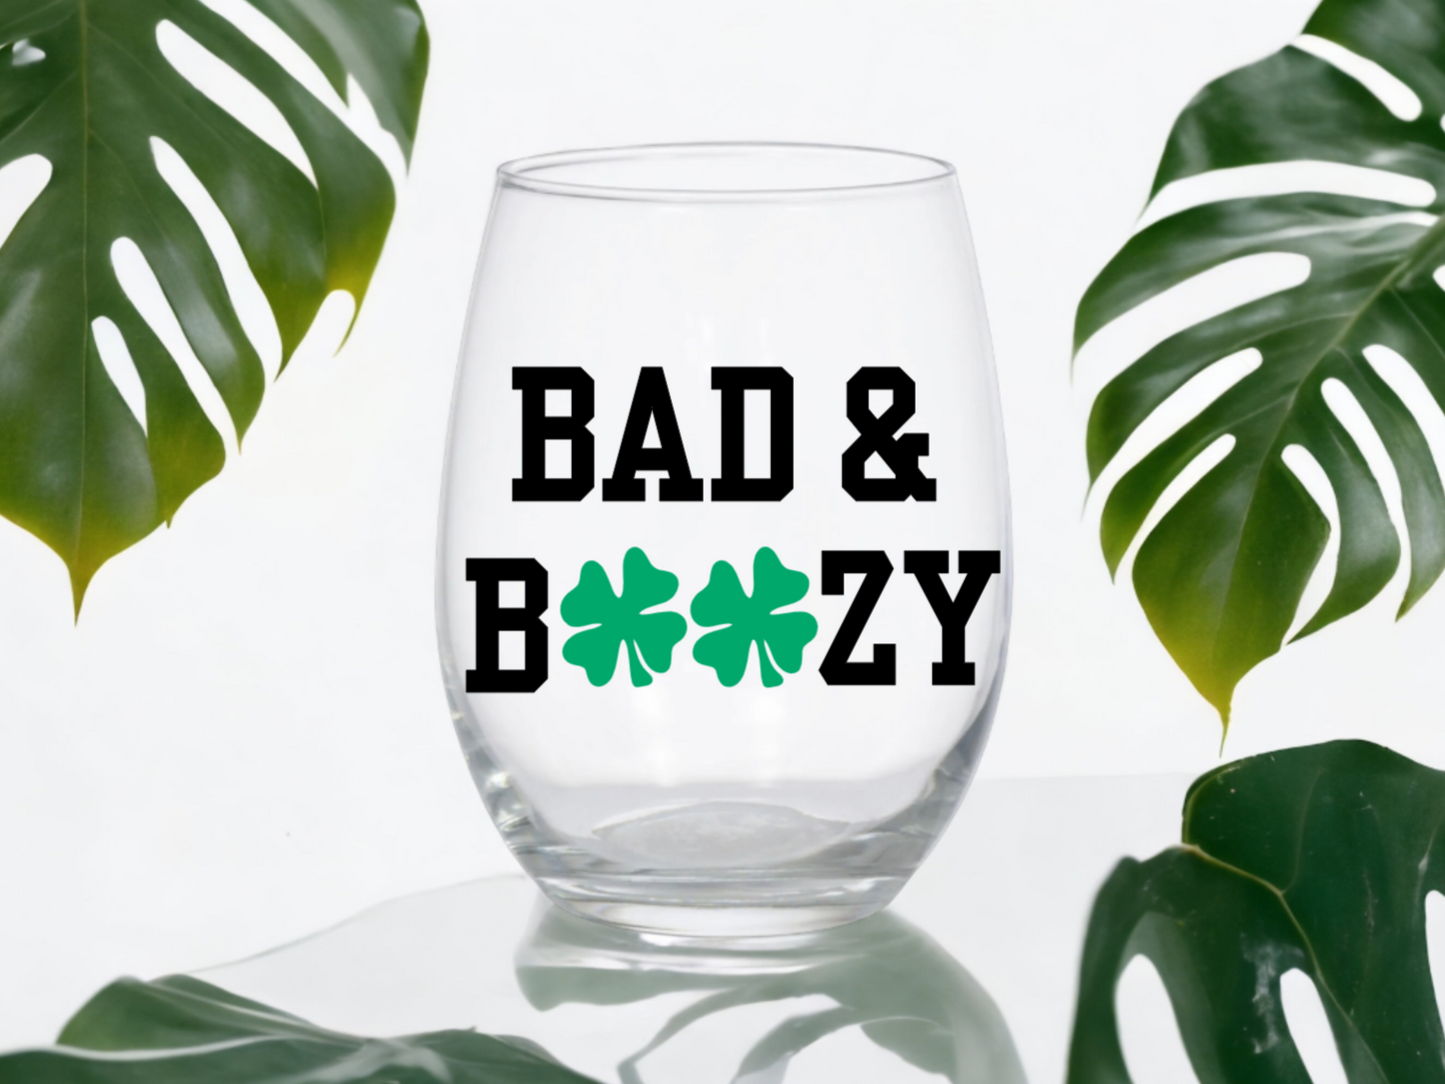 Bad & Boozy St. Patrick's Day Wine Glass